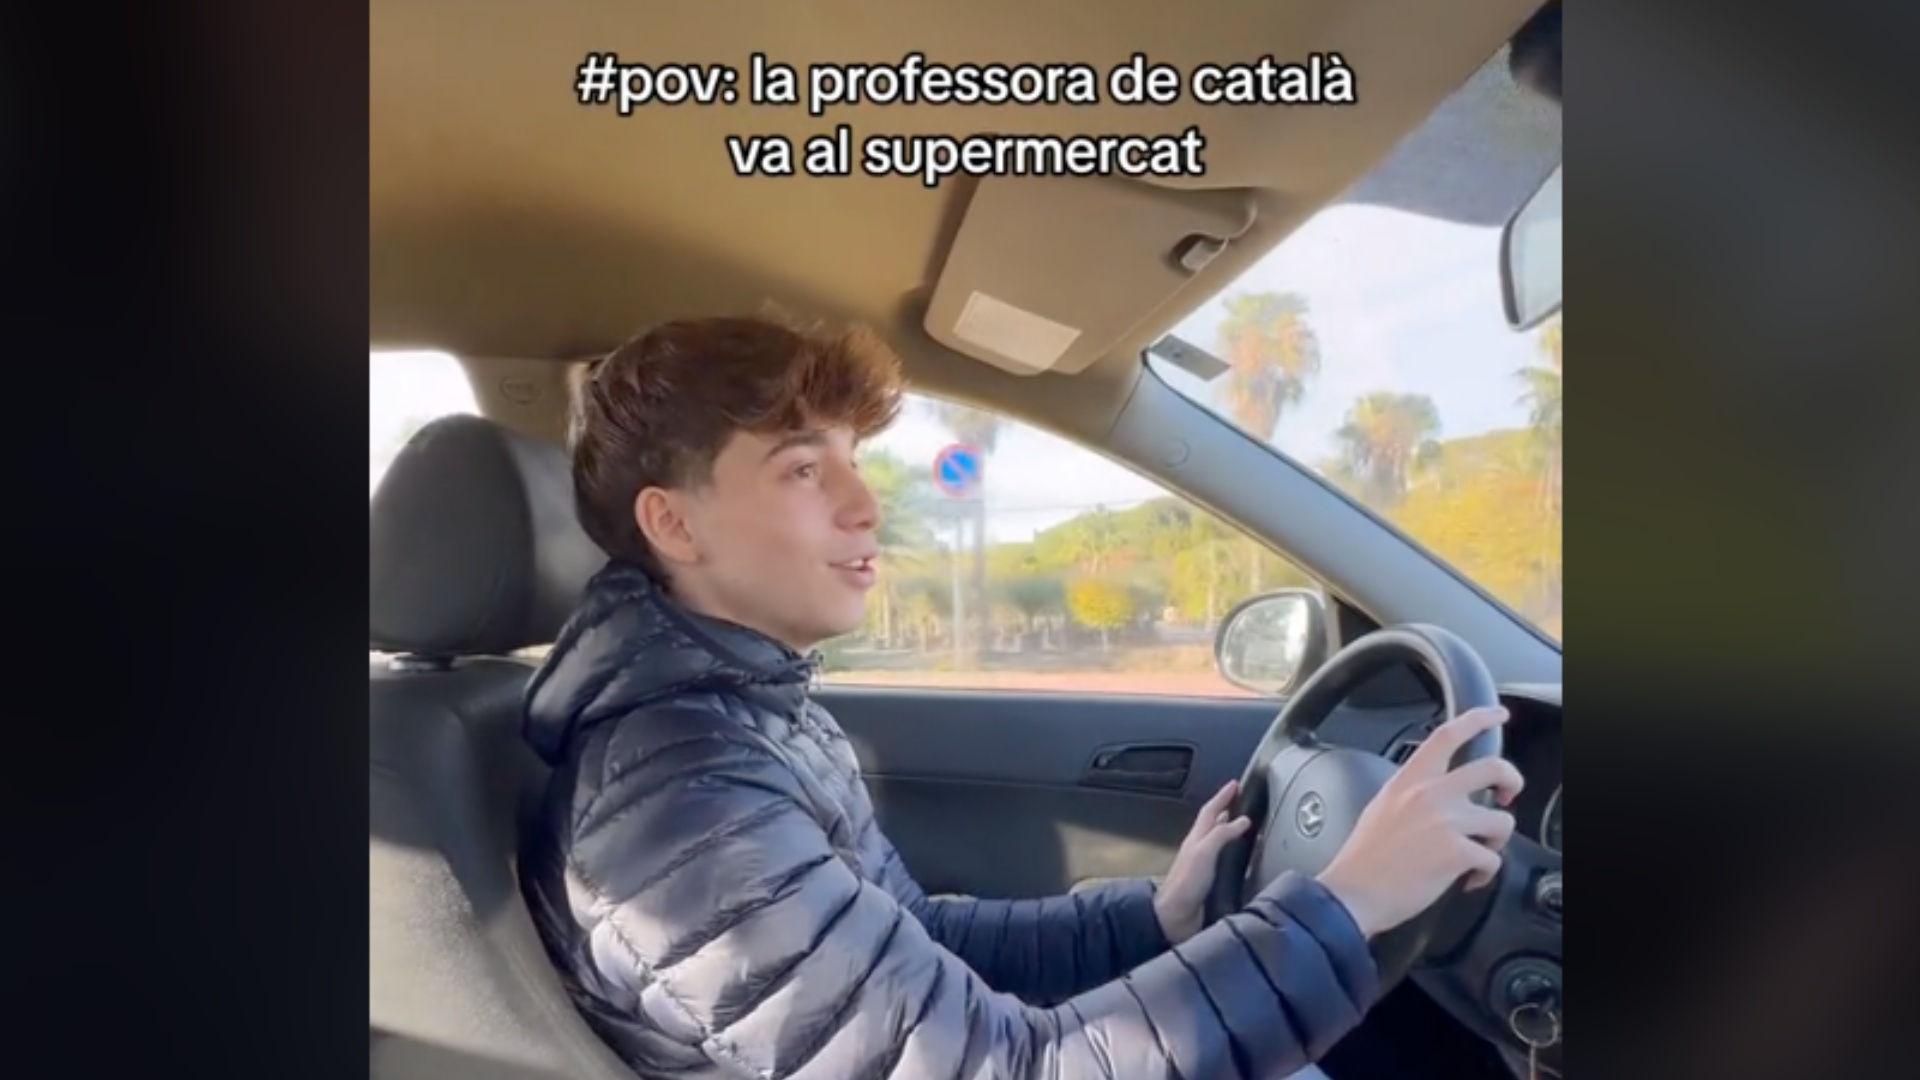 Es fa viral imitant una professora catalana que fa la compra: divertidíssim!